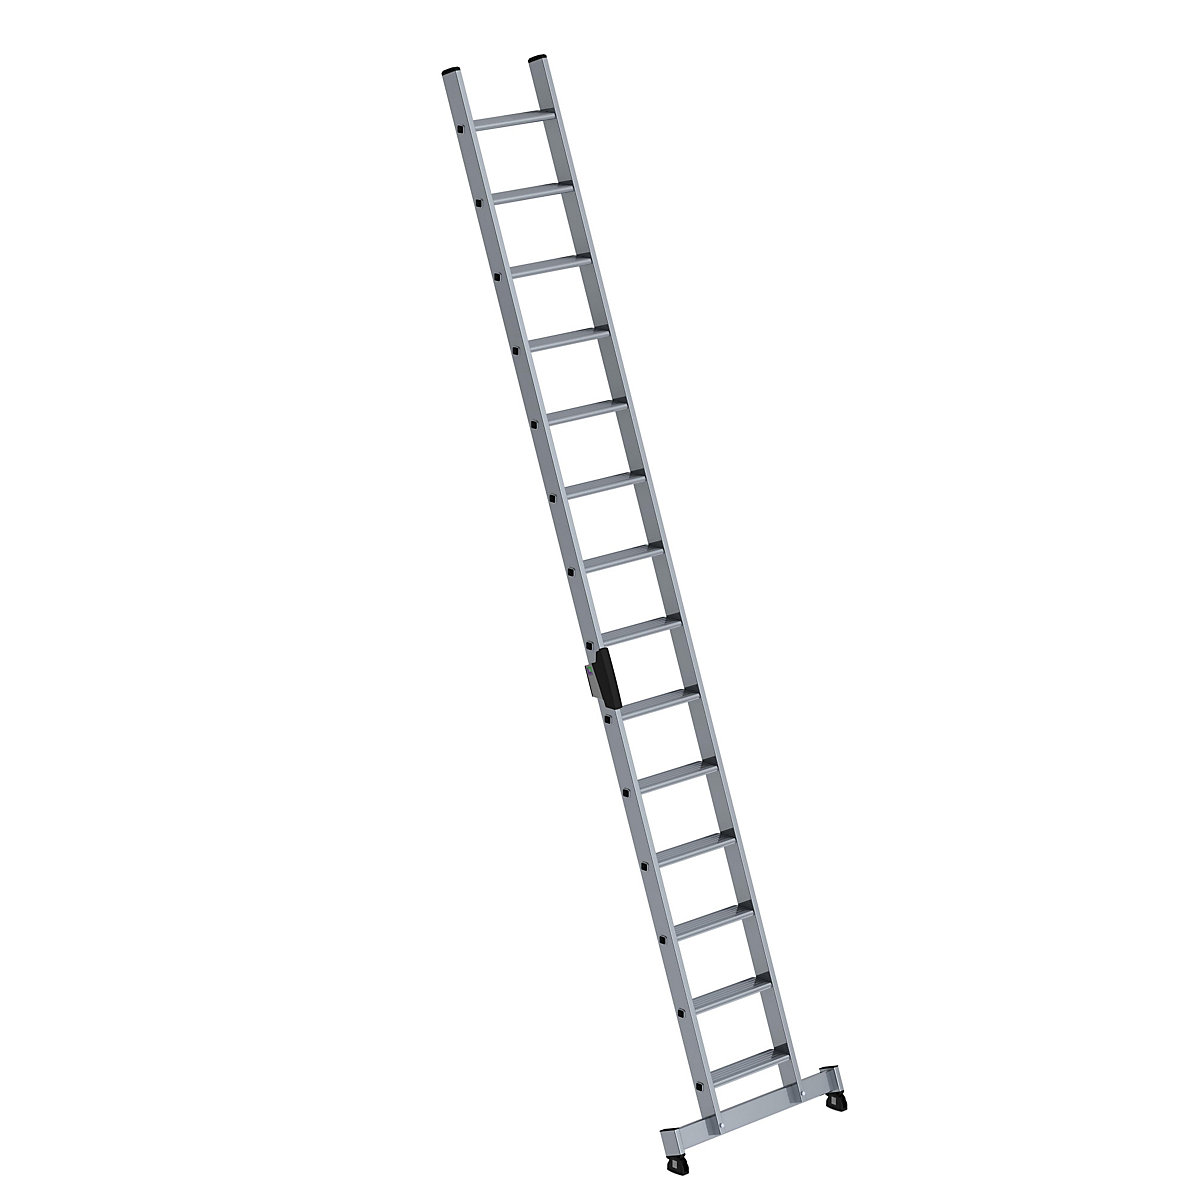 Anlegeleiter mit Stufen MUNK, Profiausführung, Breite 420 mm, 14 Stufen, mit nivello®-Traverse-8